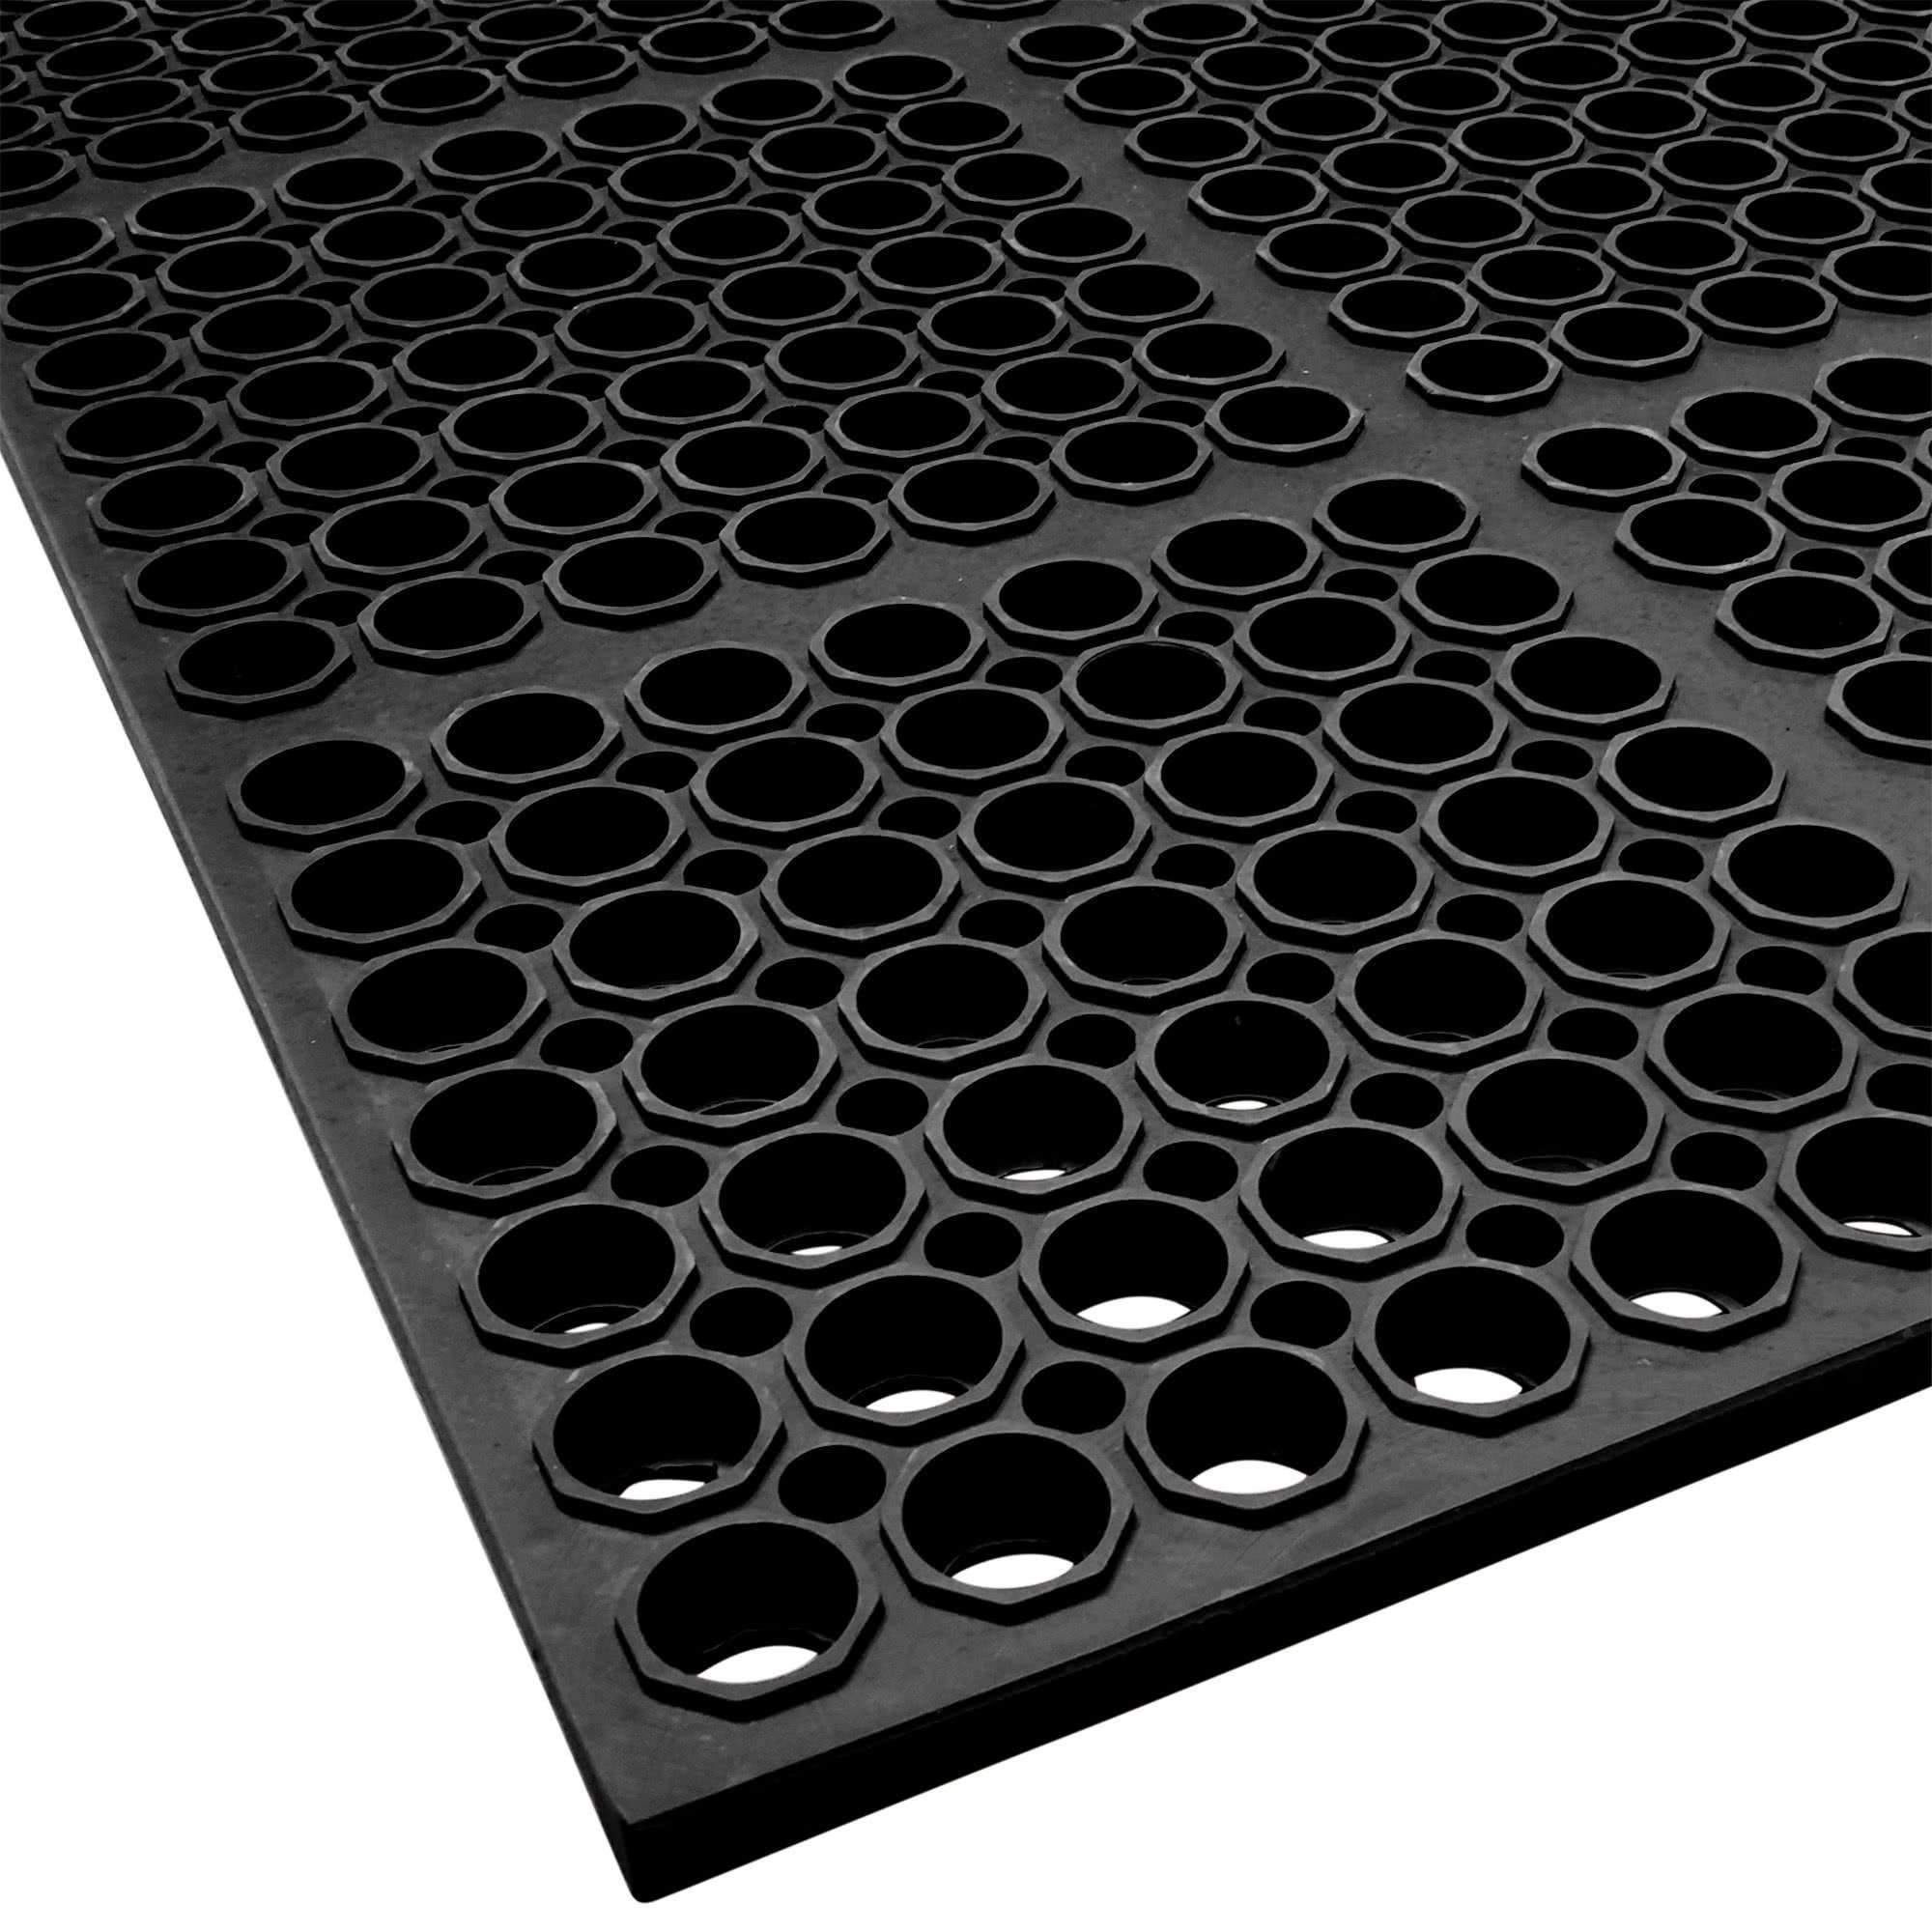 Choice 3' x 5' Black Rubber Straight Edge Anti-Fatigue Floor Mat